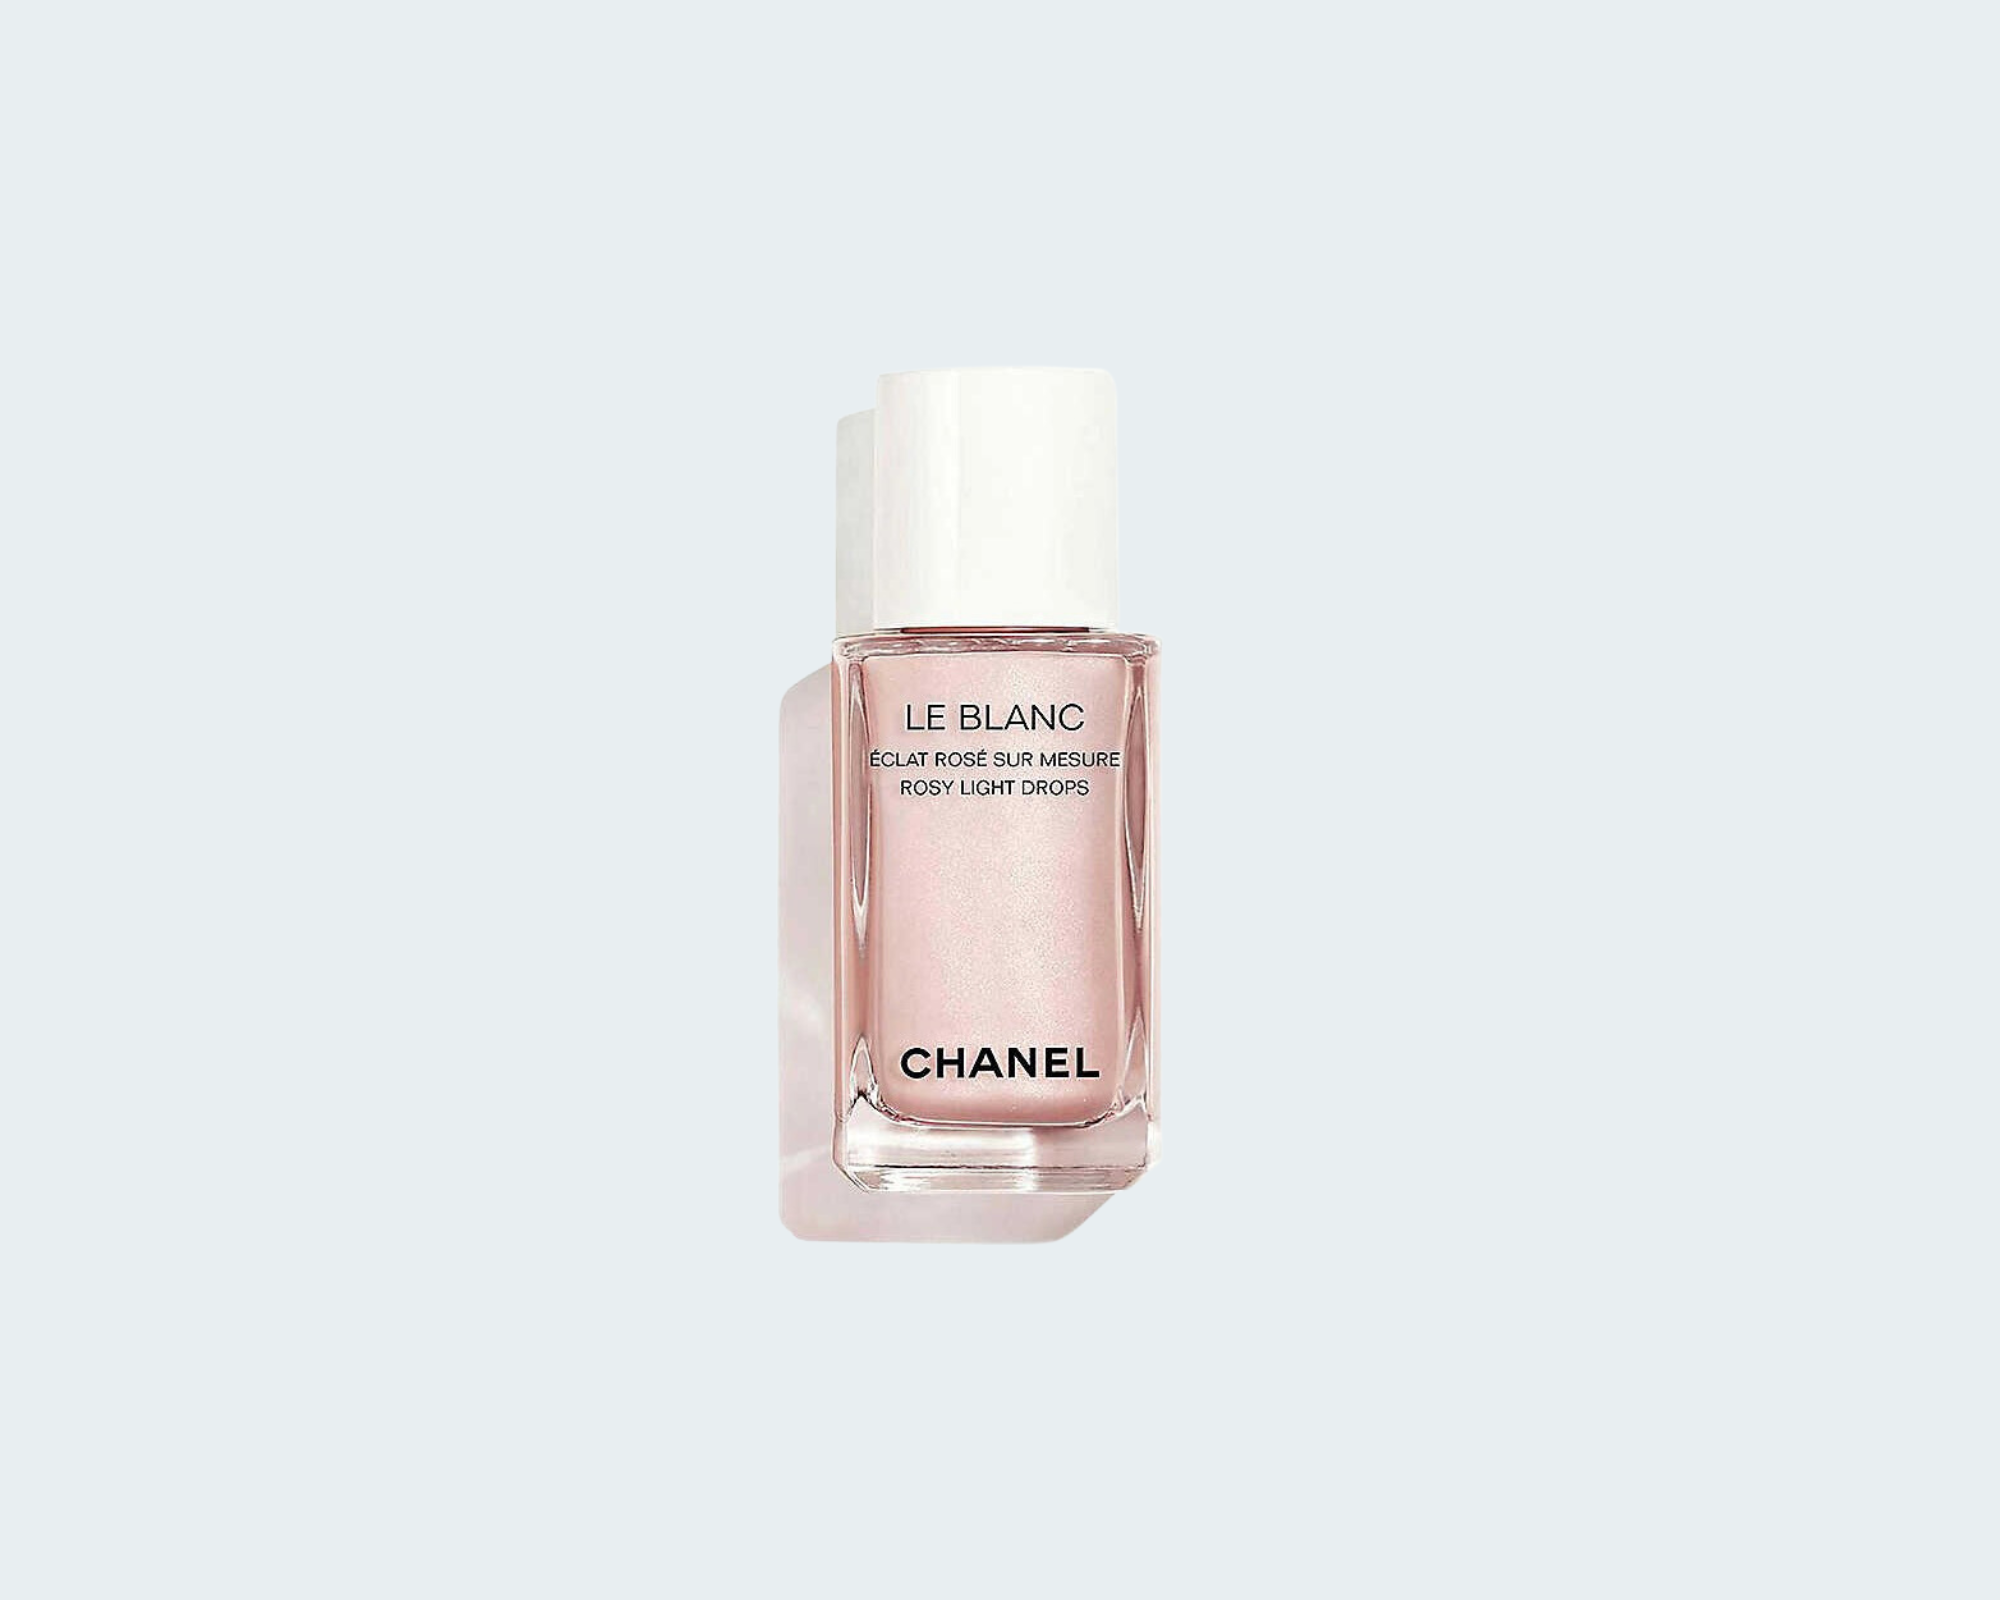 Chanel Le Blanc Sérum ingredients (Explained)